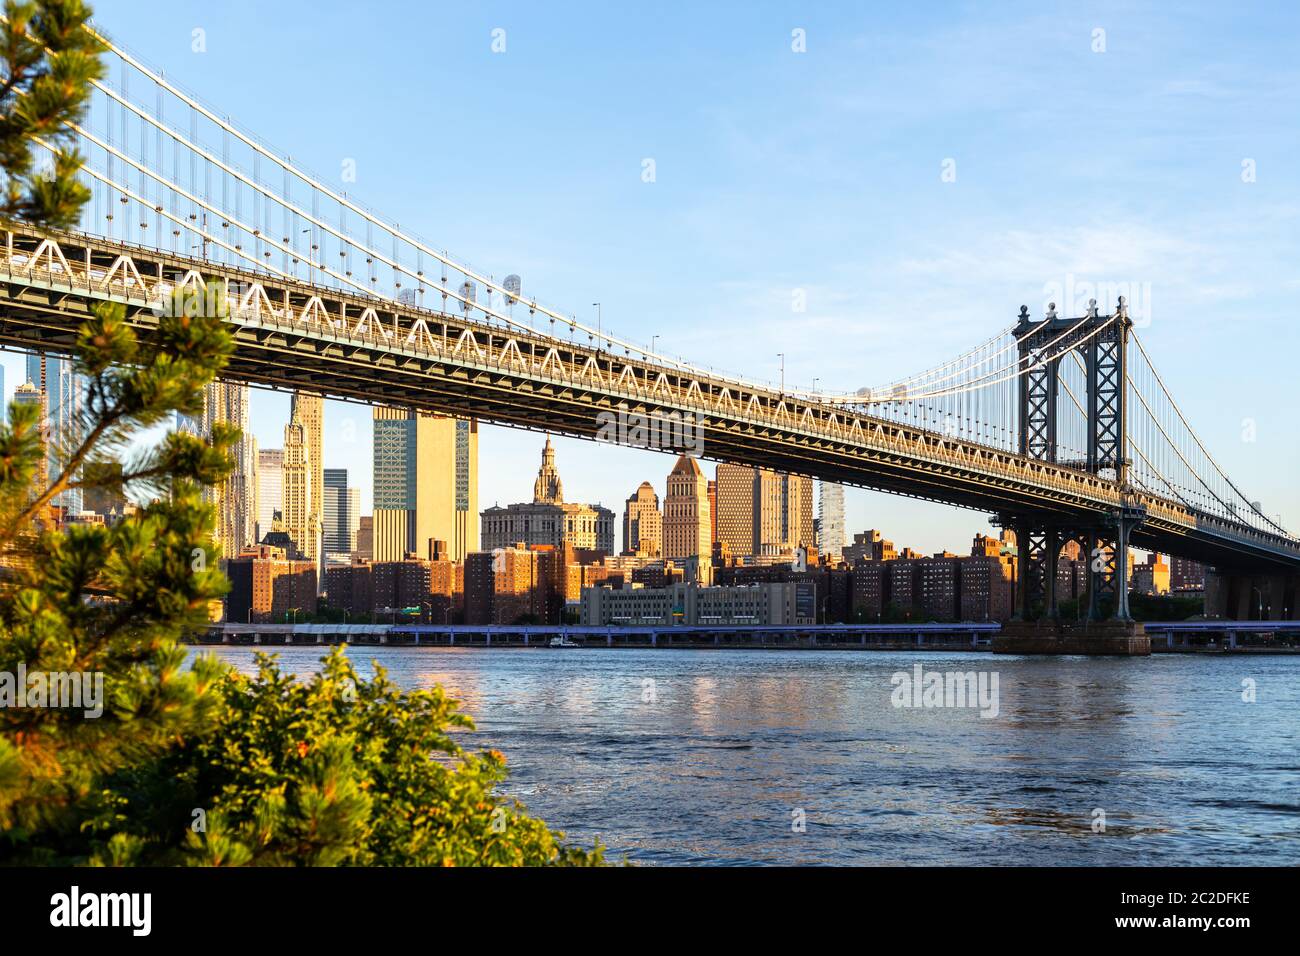 New York / USA - 25 juin 2018 : Pont de Brooklyn Park avec le bas Manhattan skyline at sunrise Banque D'Images